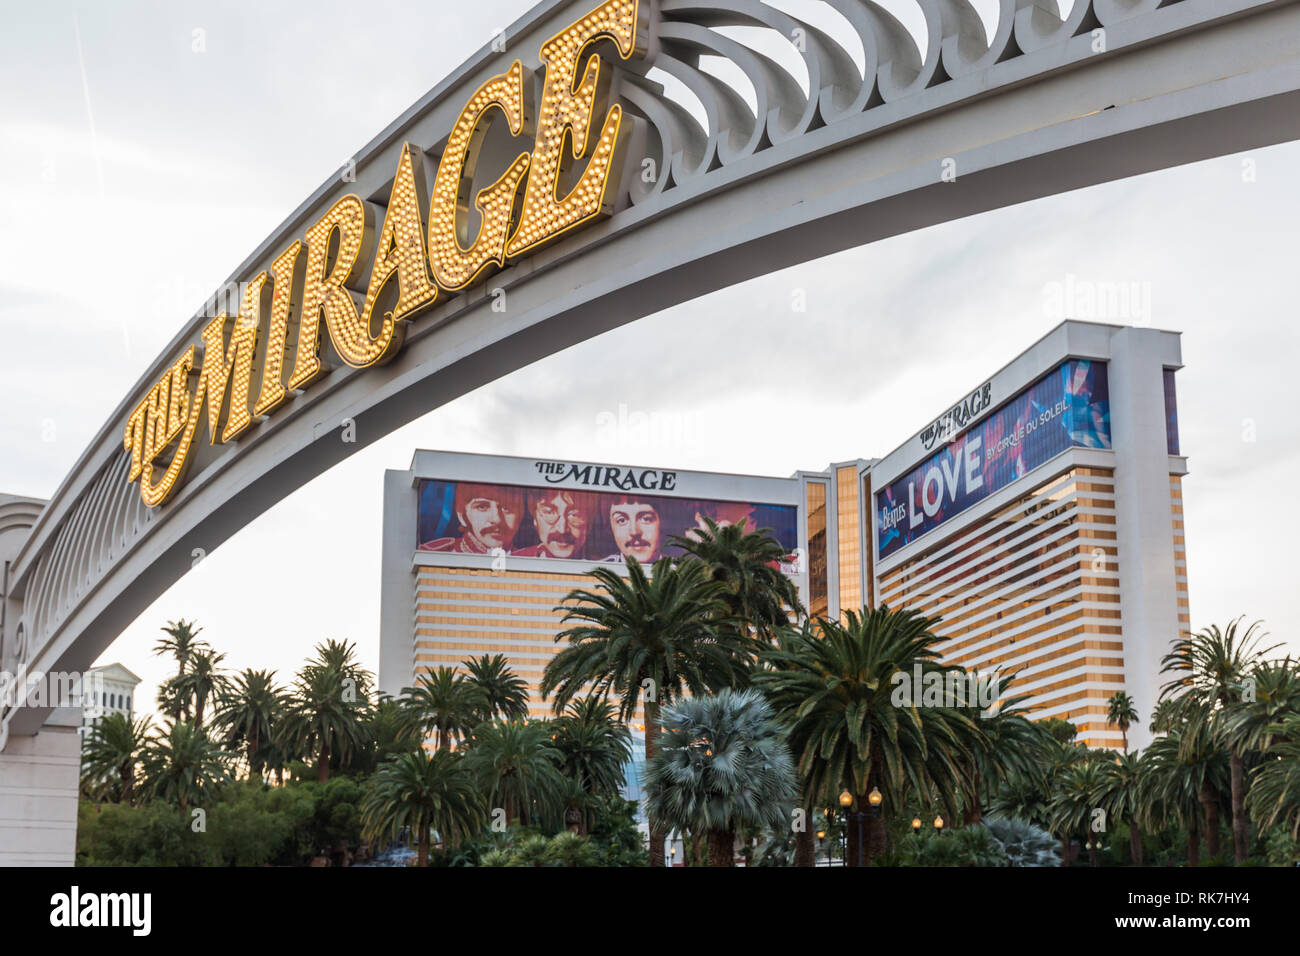 Signe de Mirage dans la lumière du jour en 2018 avec Las Vegas Strip en arrière-plan. Le Mirage est un hôtel et casino situé sur le Strip de Las Vegas, USA Banque D'Images